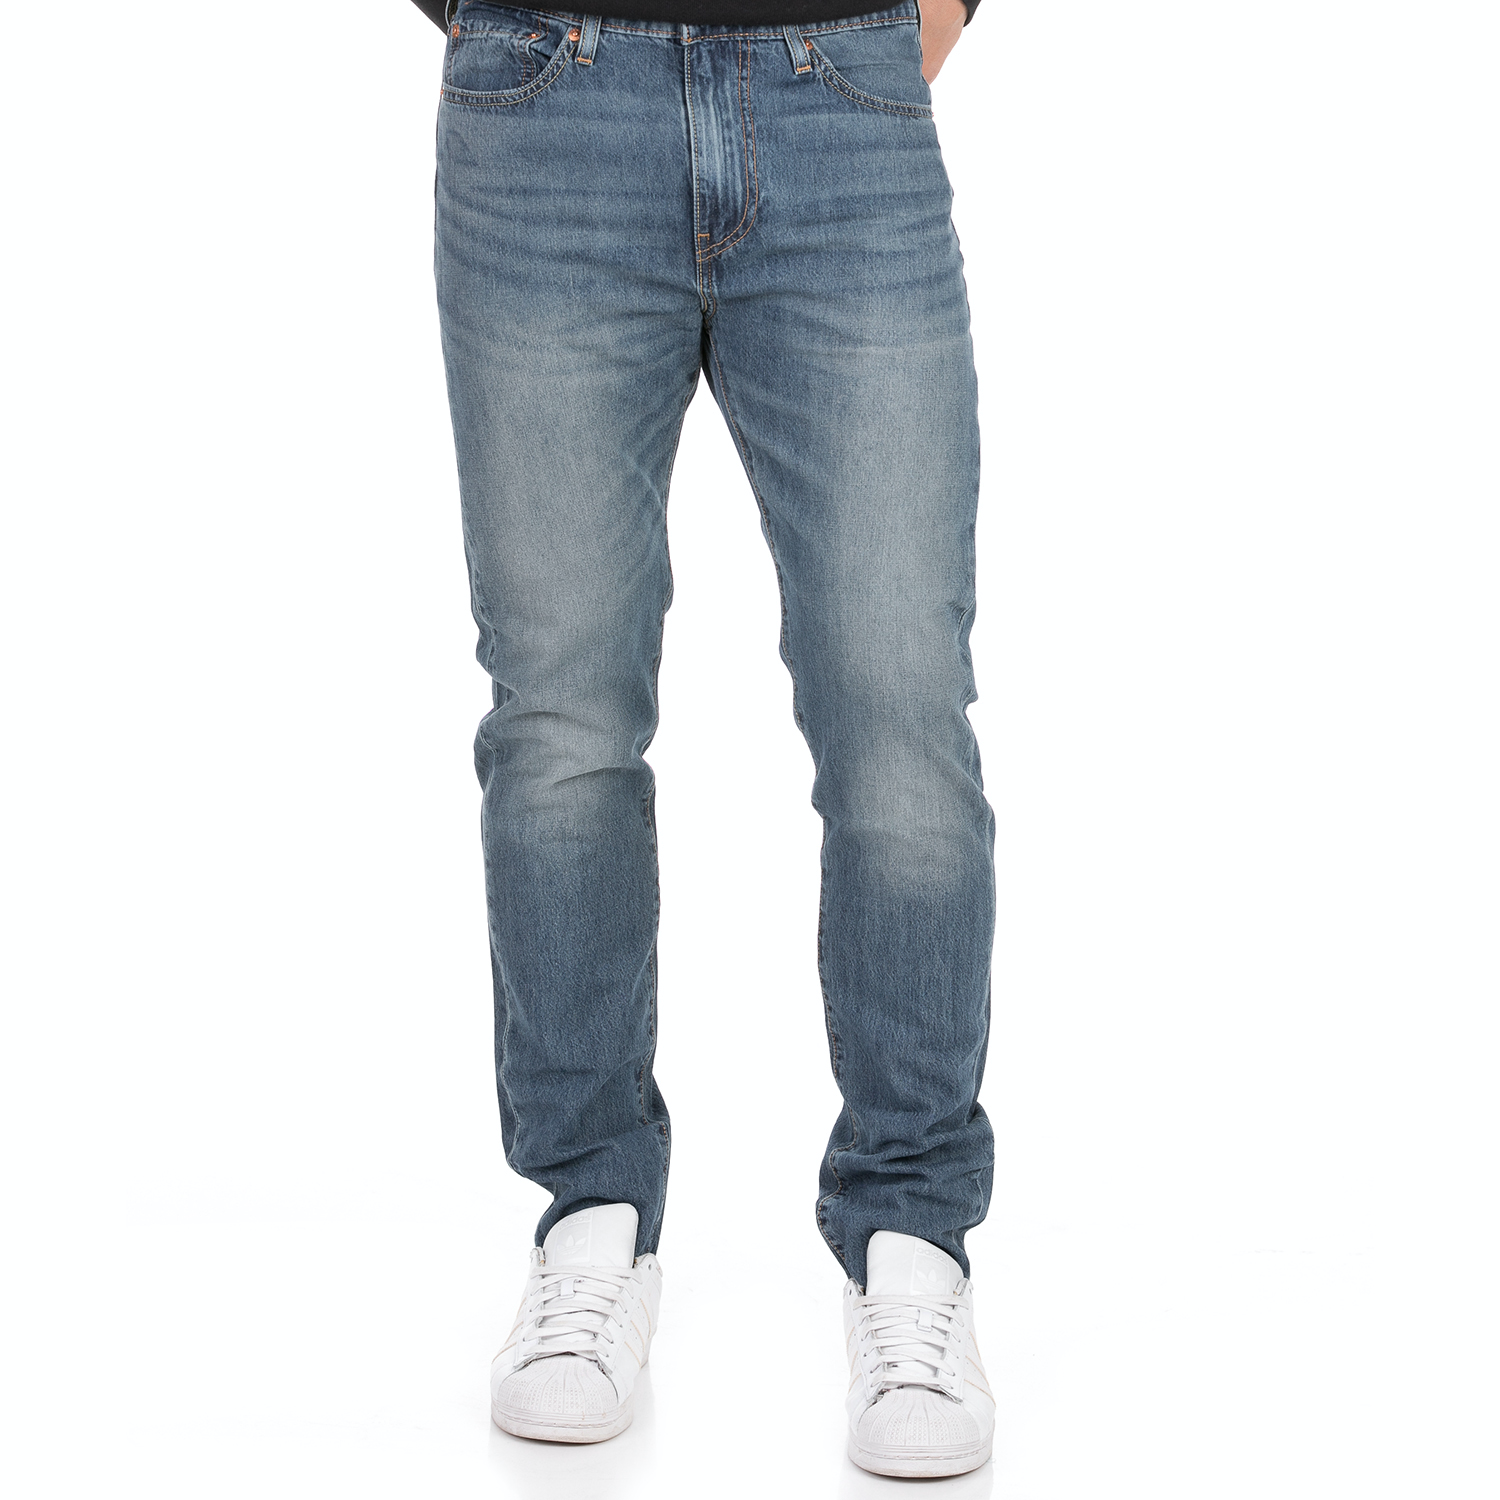 Ανδρικά/Ρούχα/Τζίν/Skinny LEVI'S - Ανδρικό jean παντελόνι LEVI'S 510 SKINNY THRESHER WARP COOL μπλε